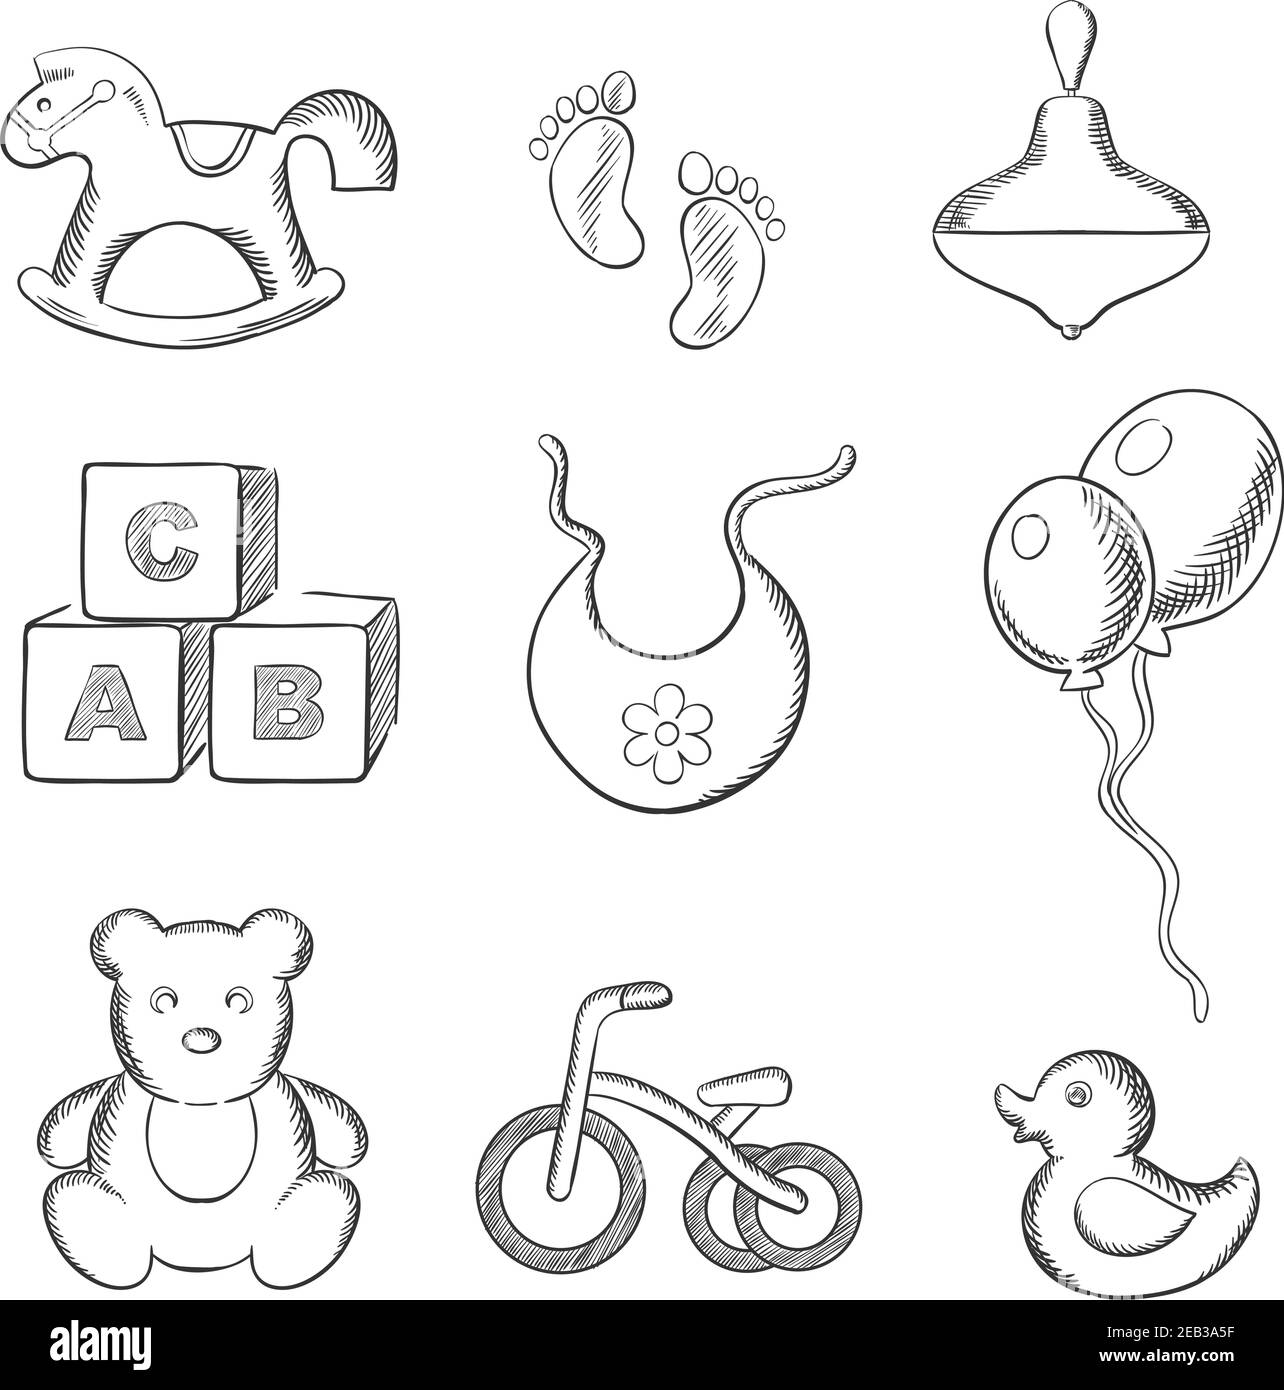 Baby skizzierte Ikonen mit Schaukelpferd, Ente, Kreisel, abc Blöcke, Lätzchen, Ballons, Dreirad und Fußabdrücke. Skizzenstil Stock Vektor